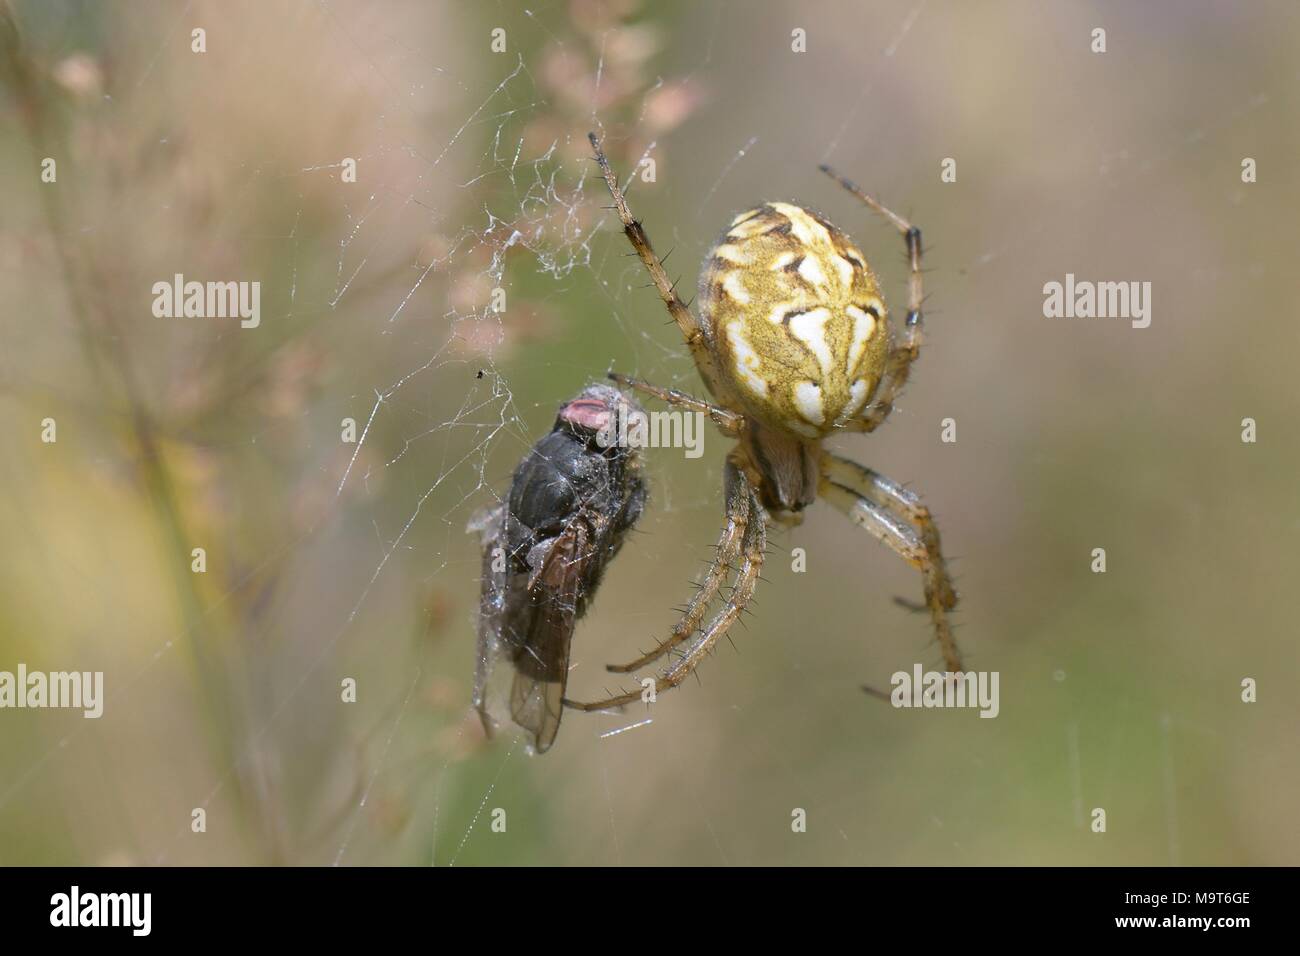 Grenzt orb Weaver (Neoscona adianta) mit Fly Beute in Seide in seinem Web in einem Wald Fahrt gewickelt, Green Lane Holz, Wiltshire, UK, Juli. Stockfoto